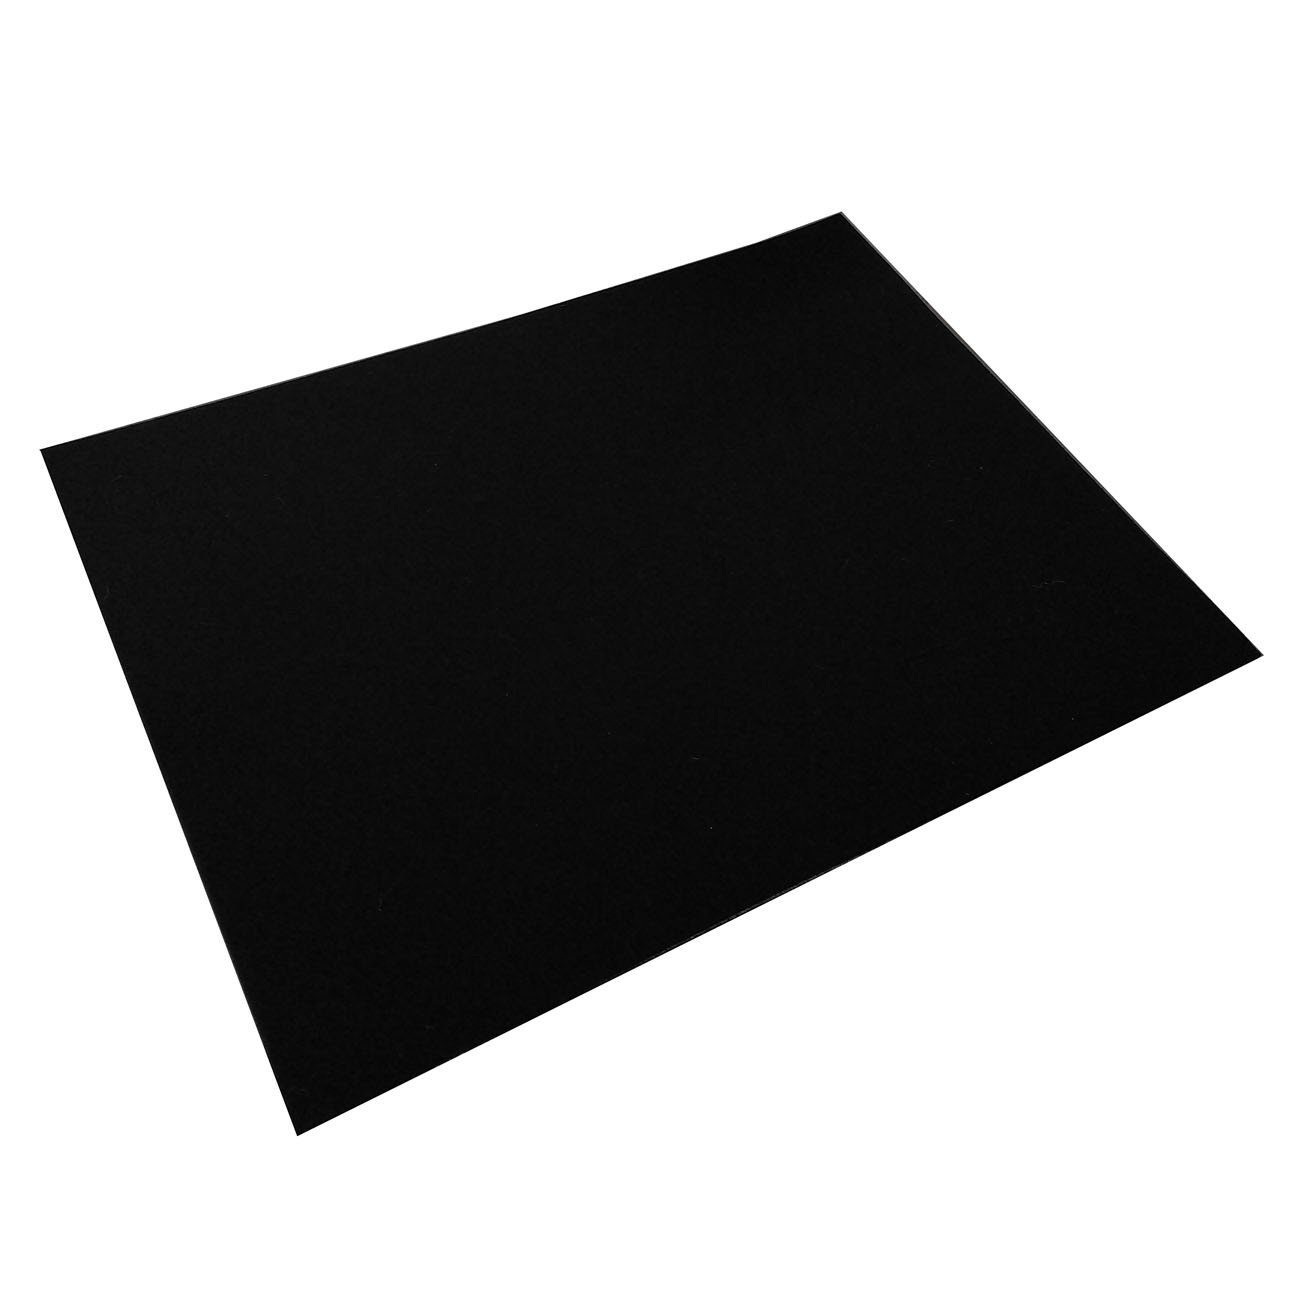 Filzset schwarz, aus Daff 100% daff Wolle Tischset (Merinowolle) Topfuntersetzer 33x45